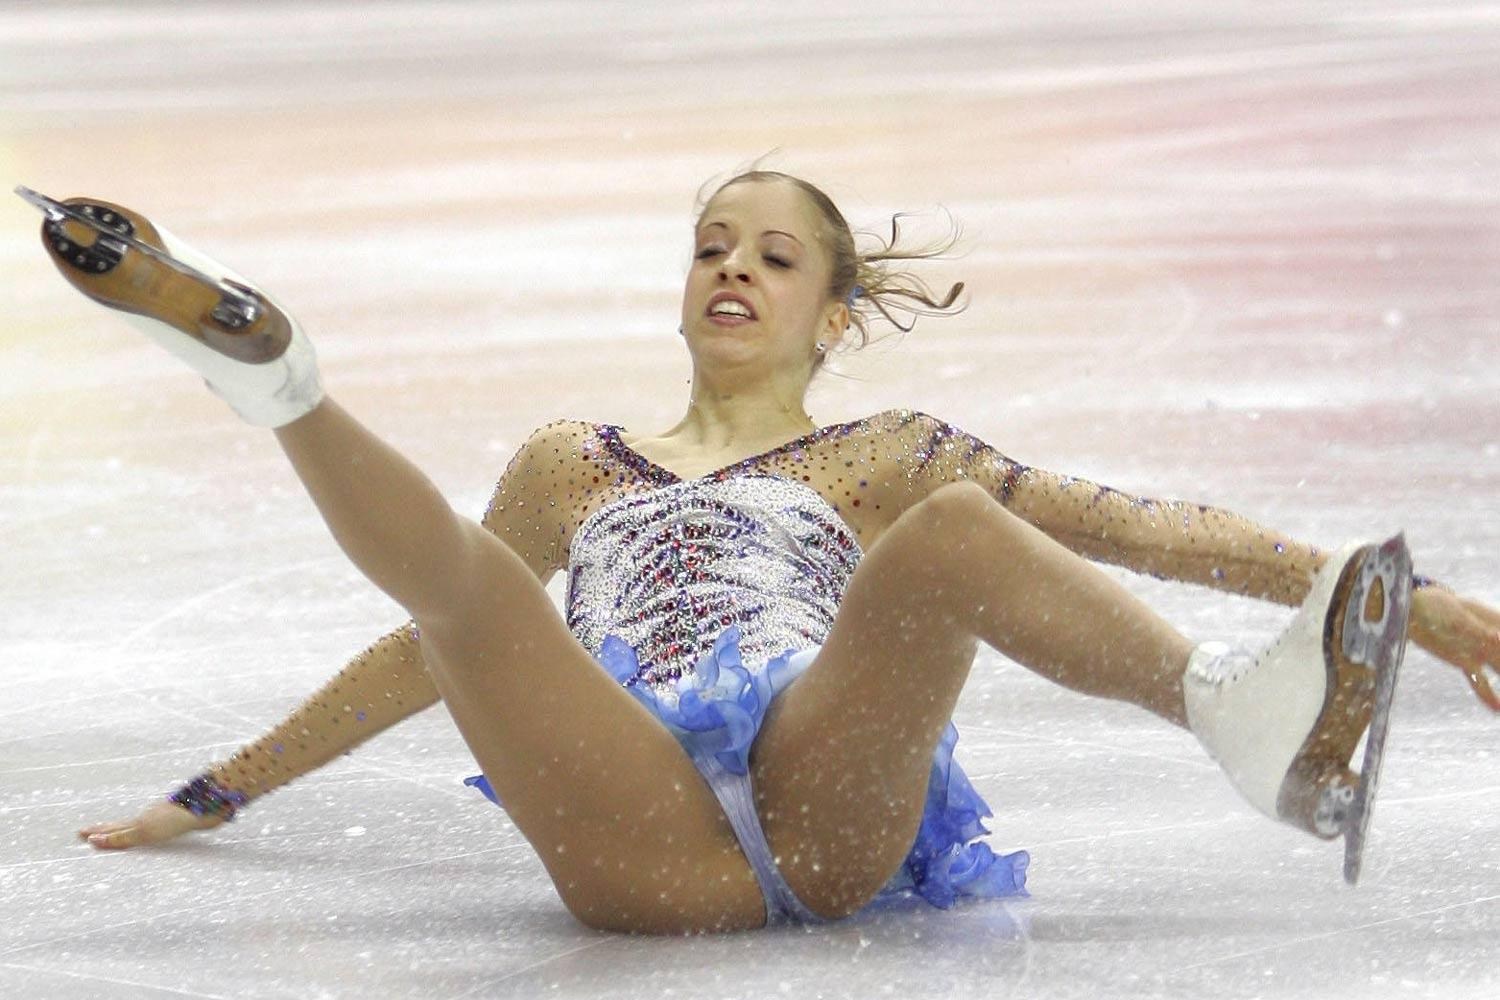 Russian Figure Skater (71 photos)